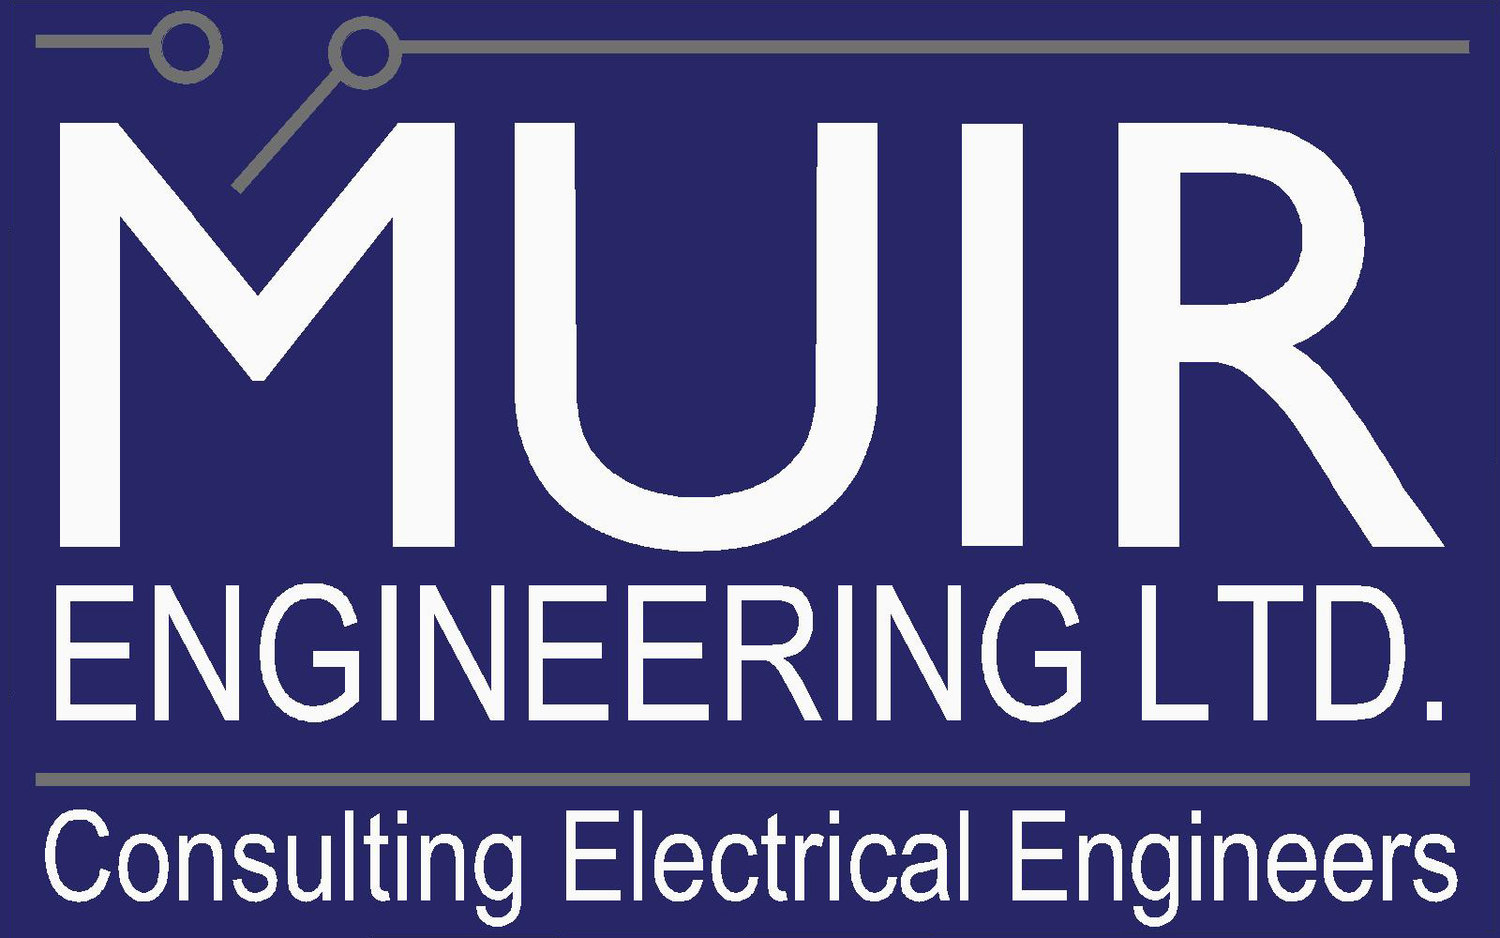 Muir Engineering